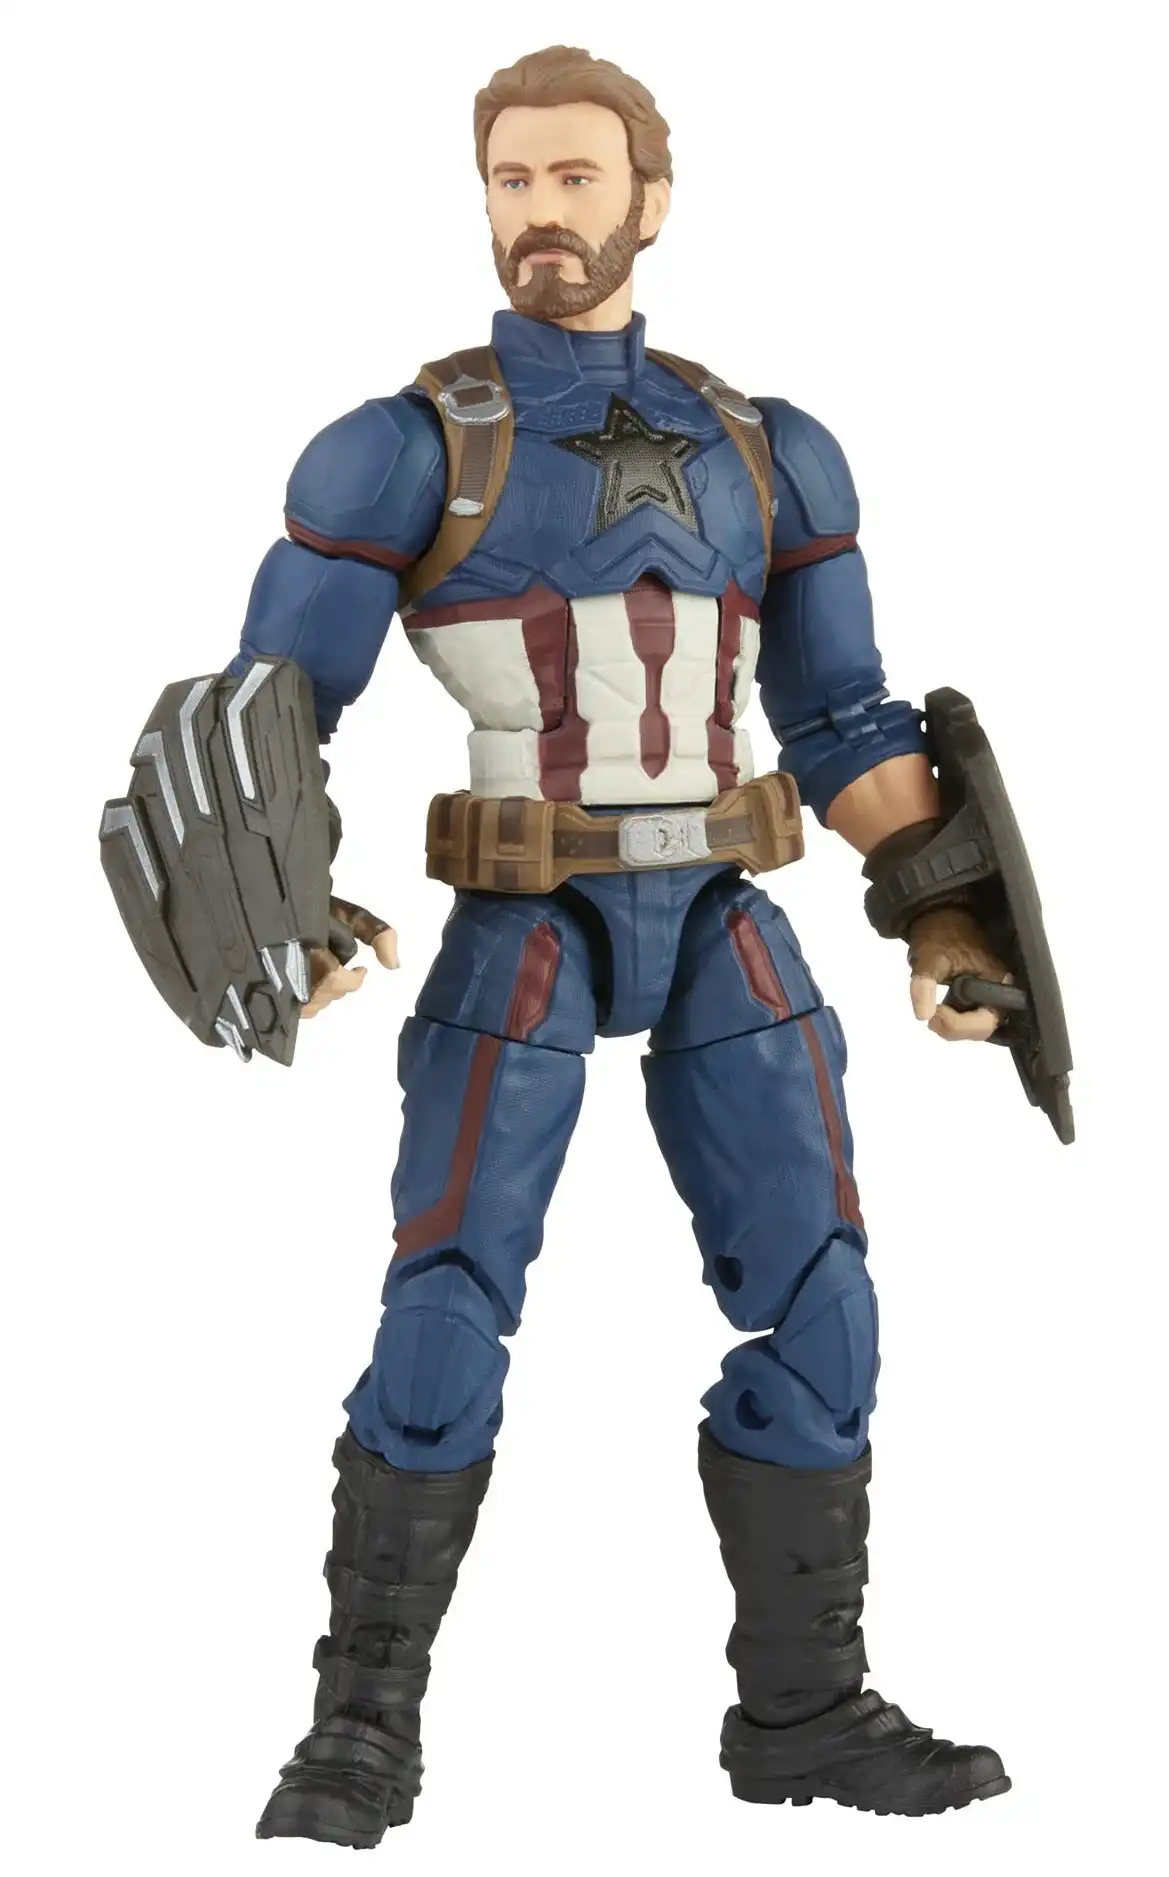 Marvel Legends Avengers Infinity War Saga Captain America